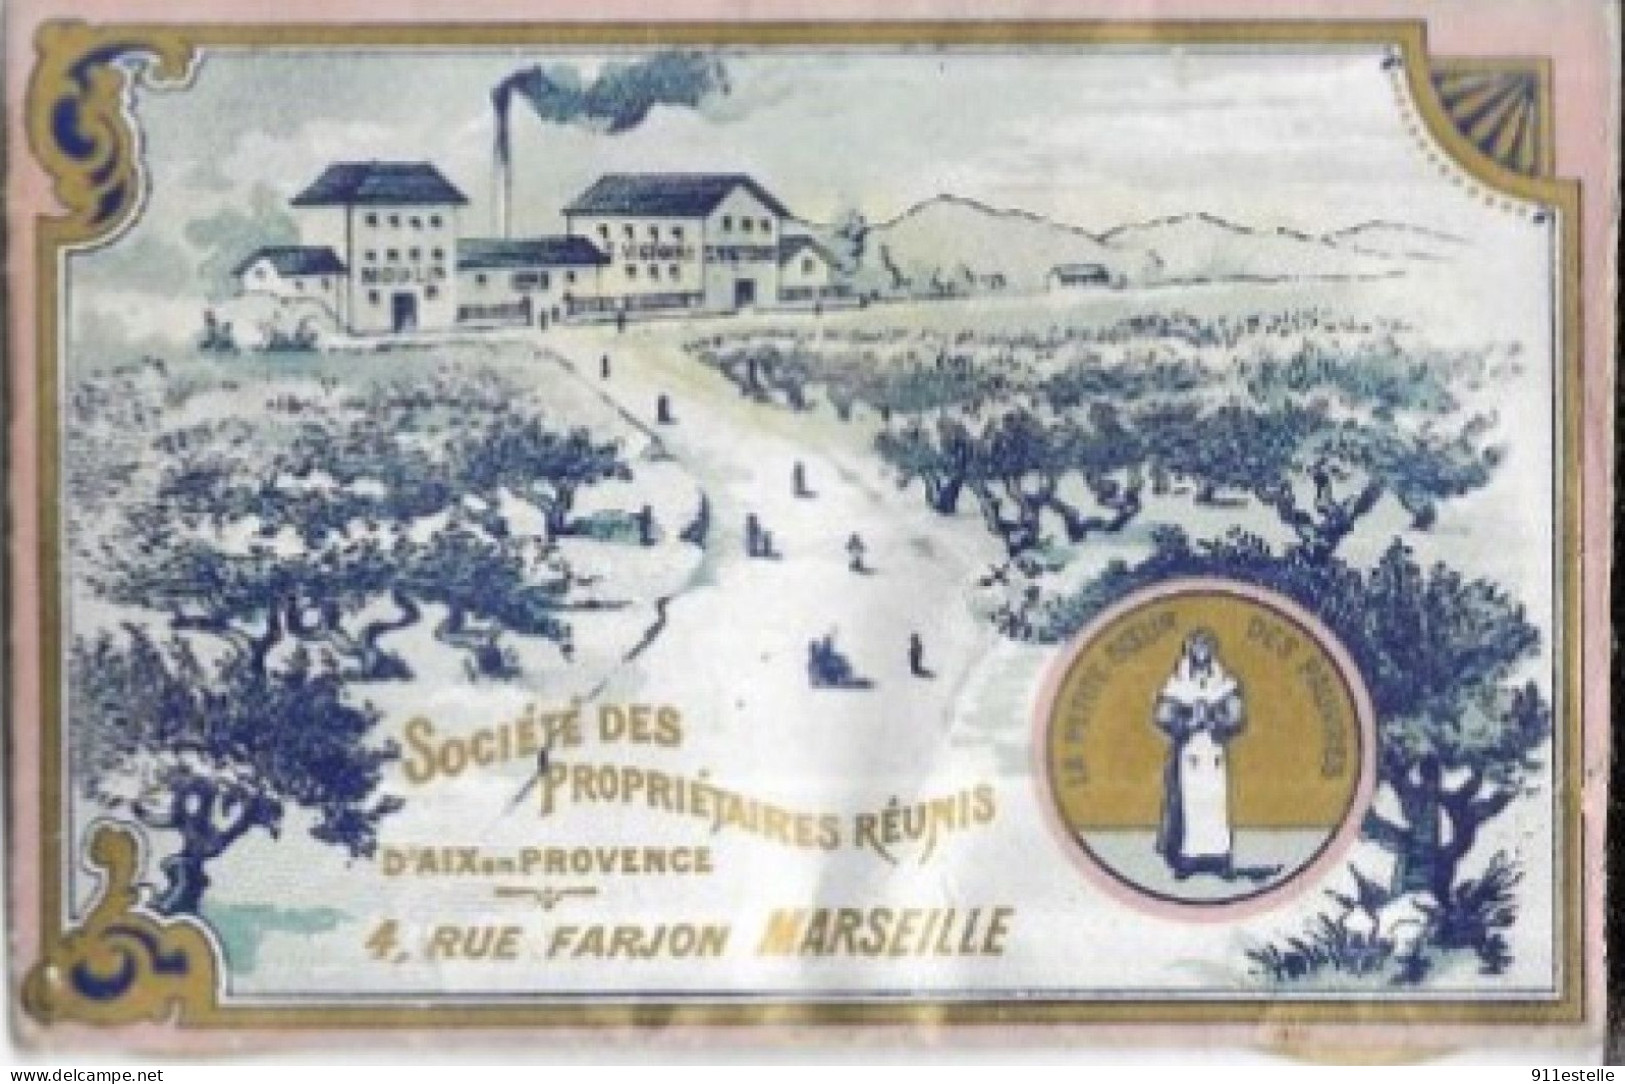 13 MARSEILLE . SOCIETE DES PROPRIETAIRES REUNIS 4. RUE FARJON ( Carte PUB Violette  ) - Bahnhof, Belle De Mai, Plombières